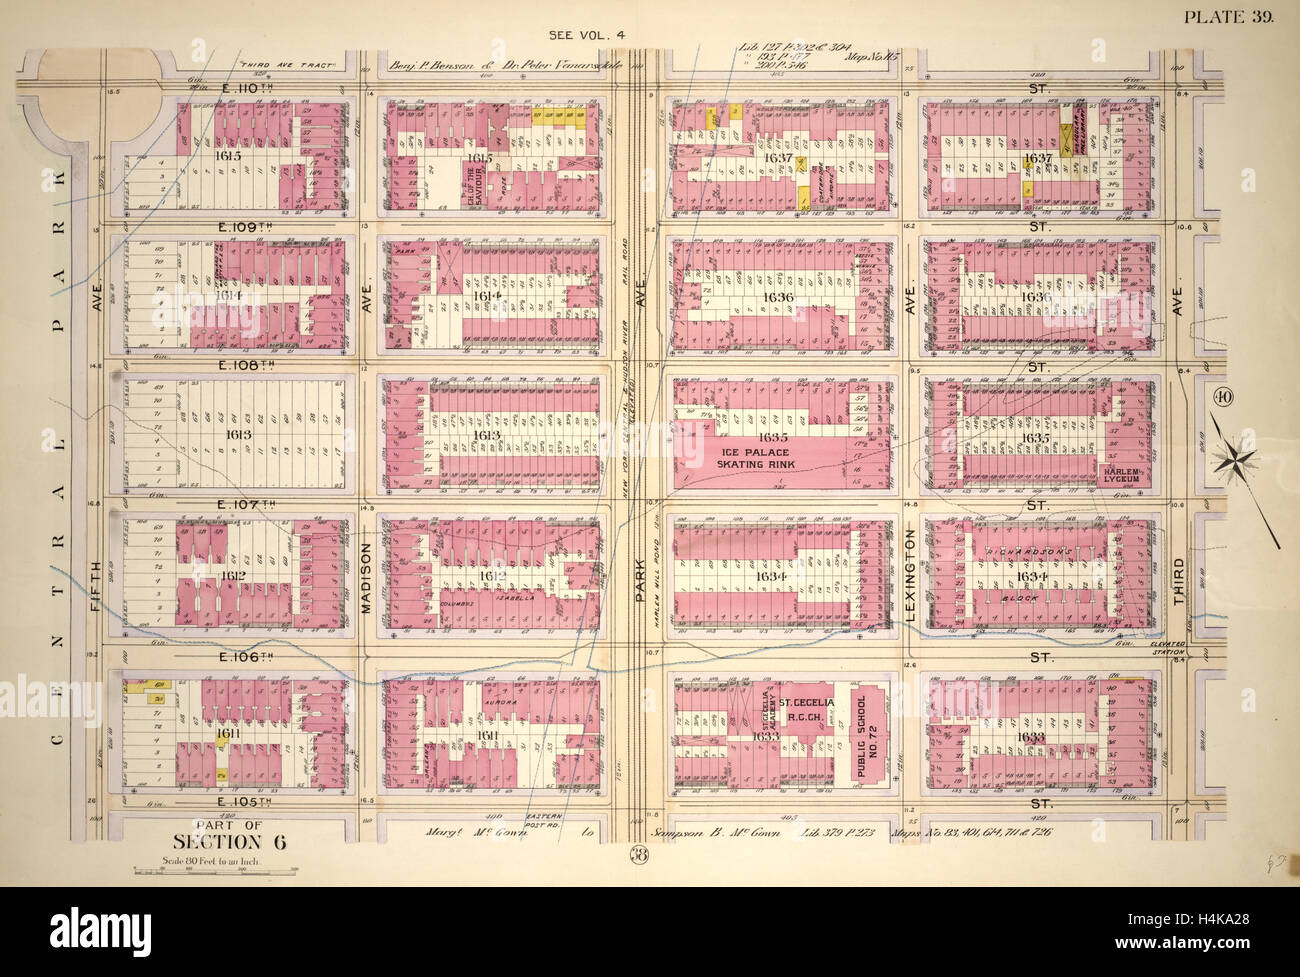 La piastra 39, parte della sezione 6: delimitata da E. 110th Street, la terza Avenue, E. 105Street e Fifth Avenue. Manhattan, 1902 Foto Stock